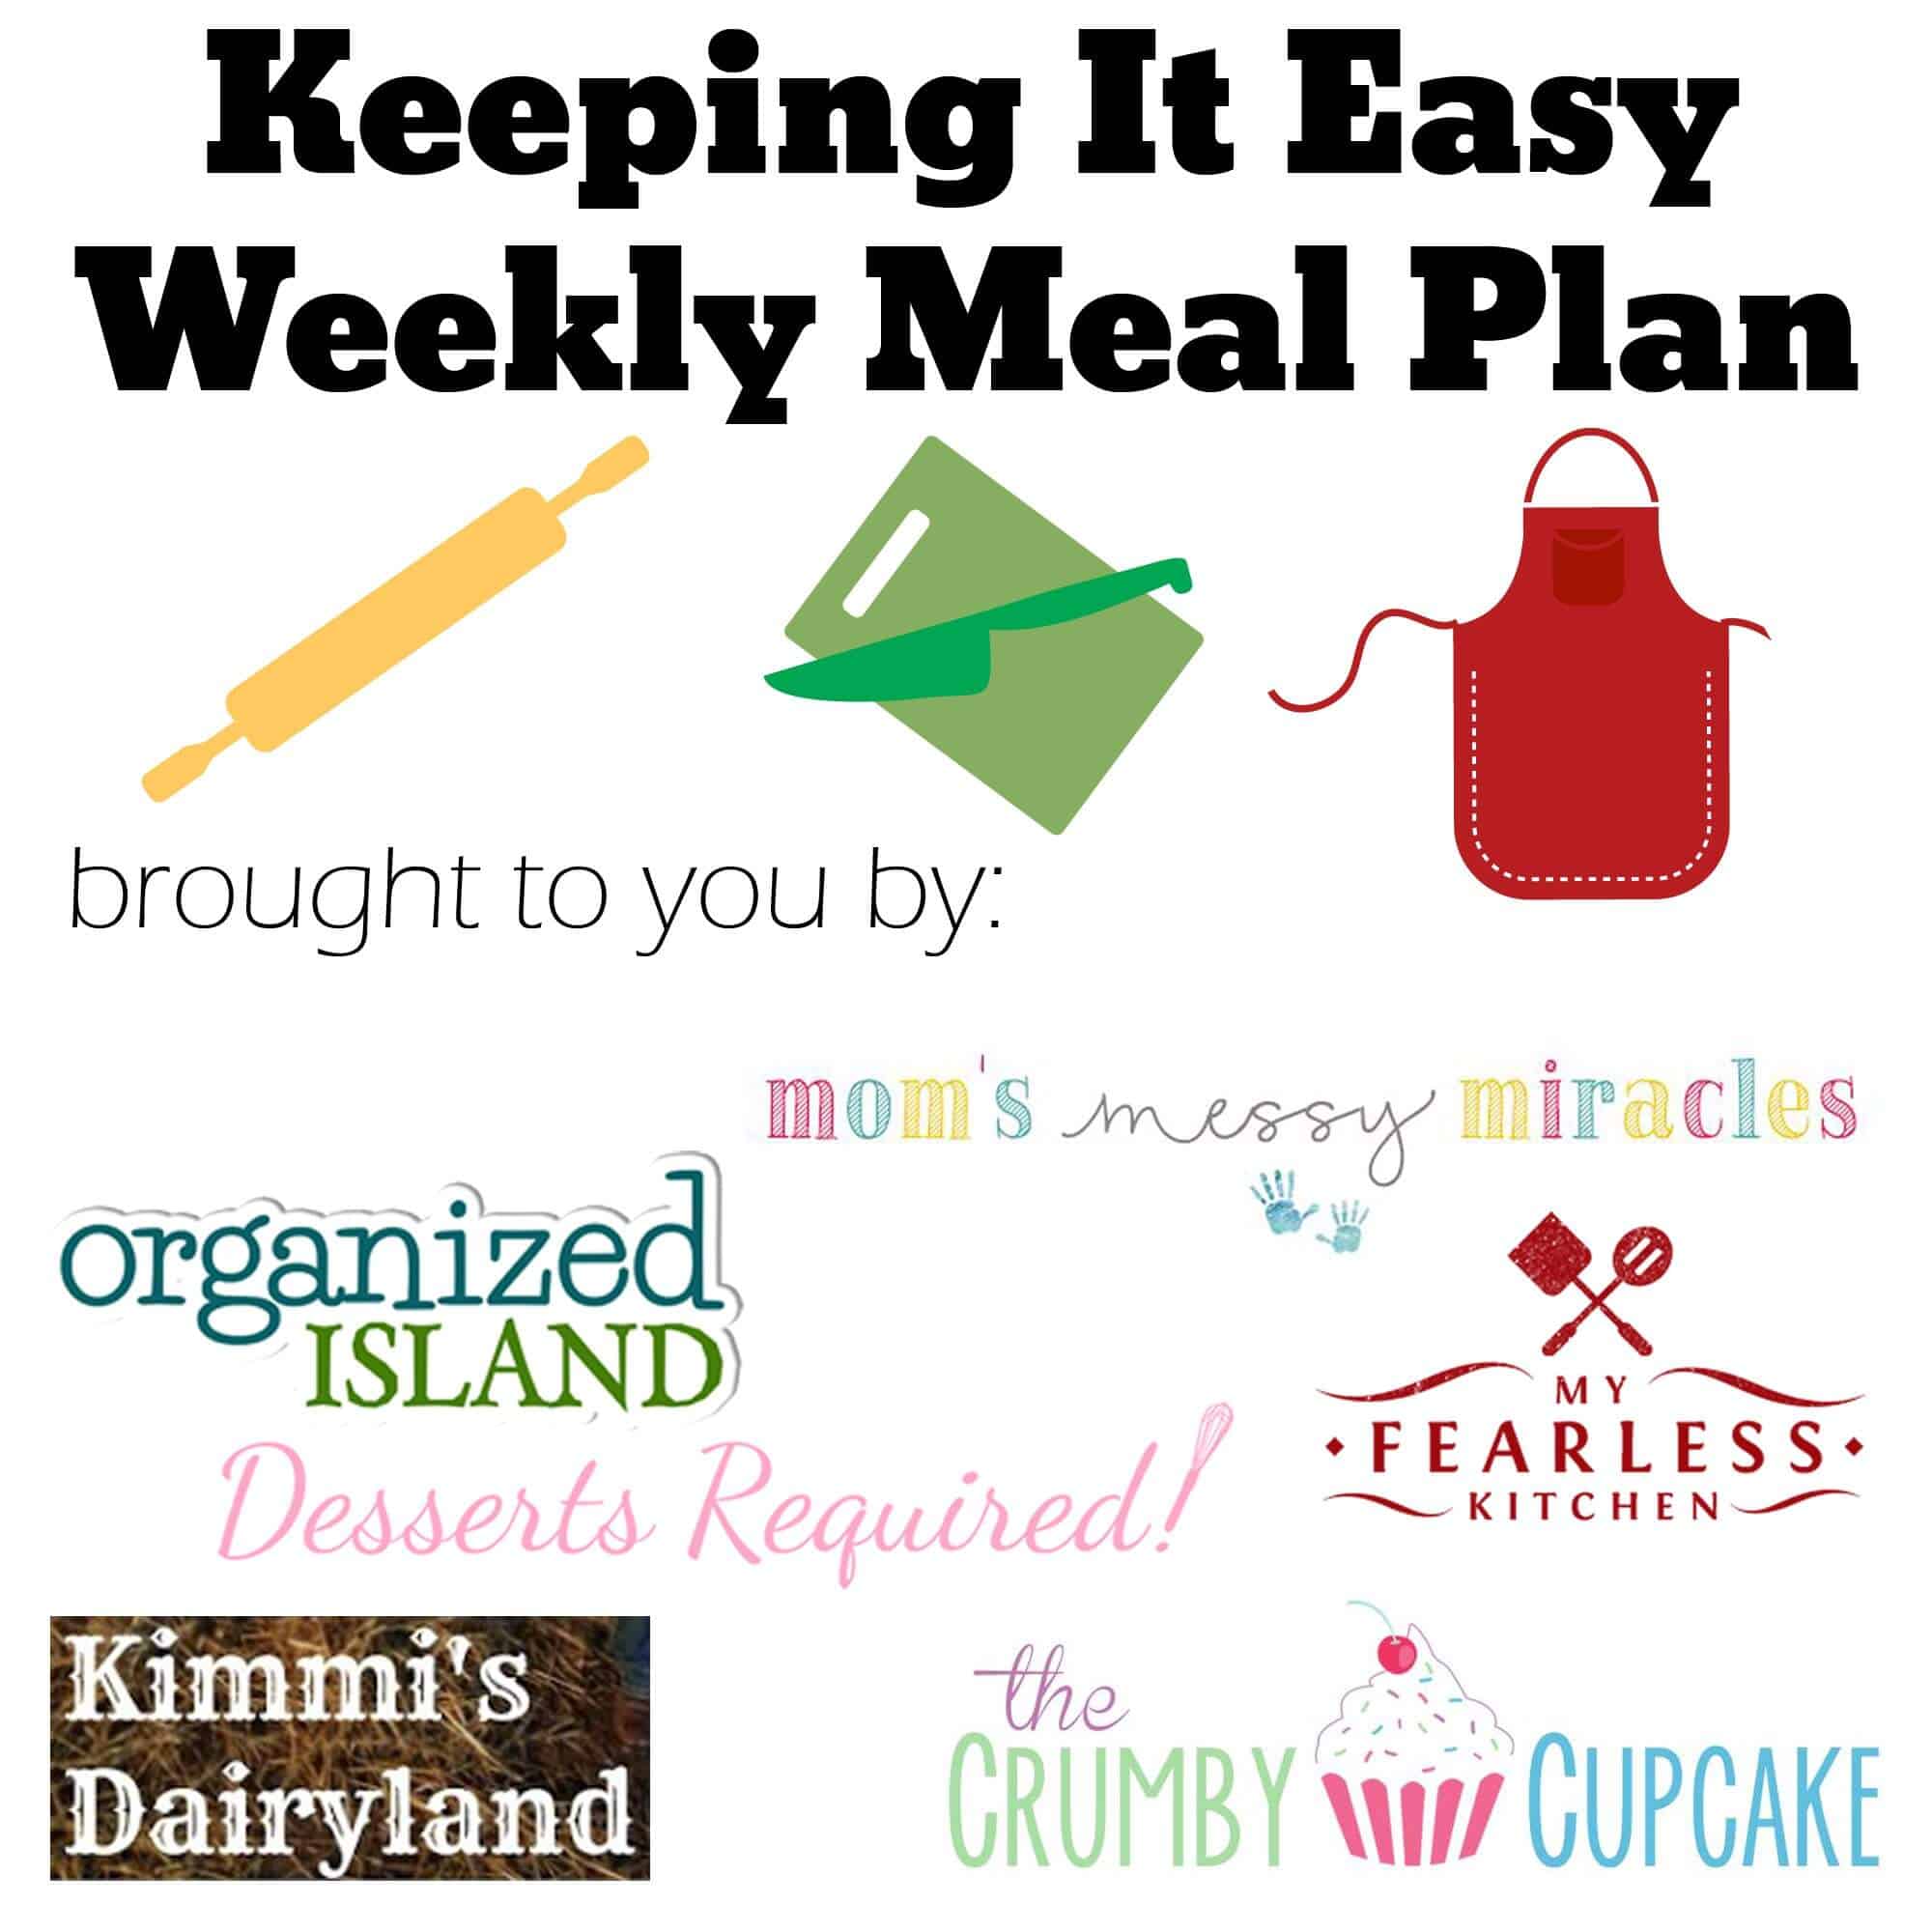 #KeepItEasy Weekly Meal Plan